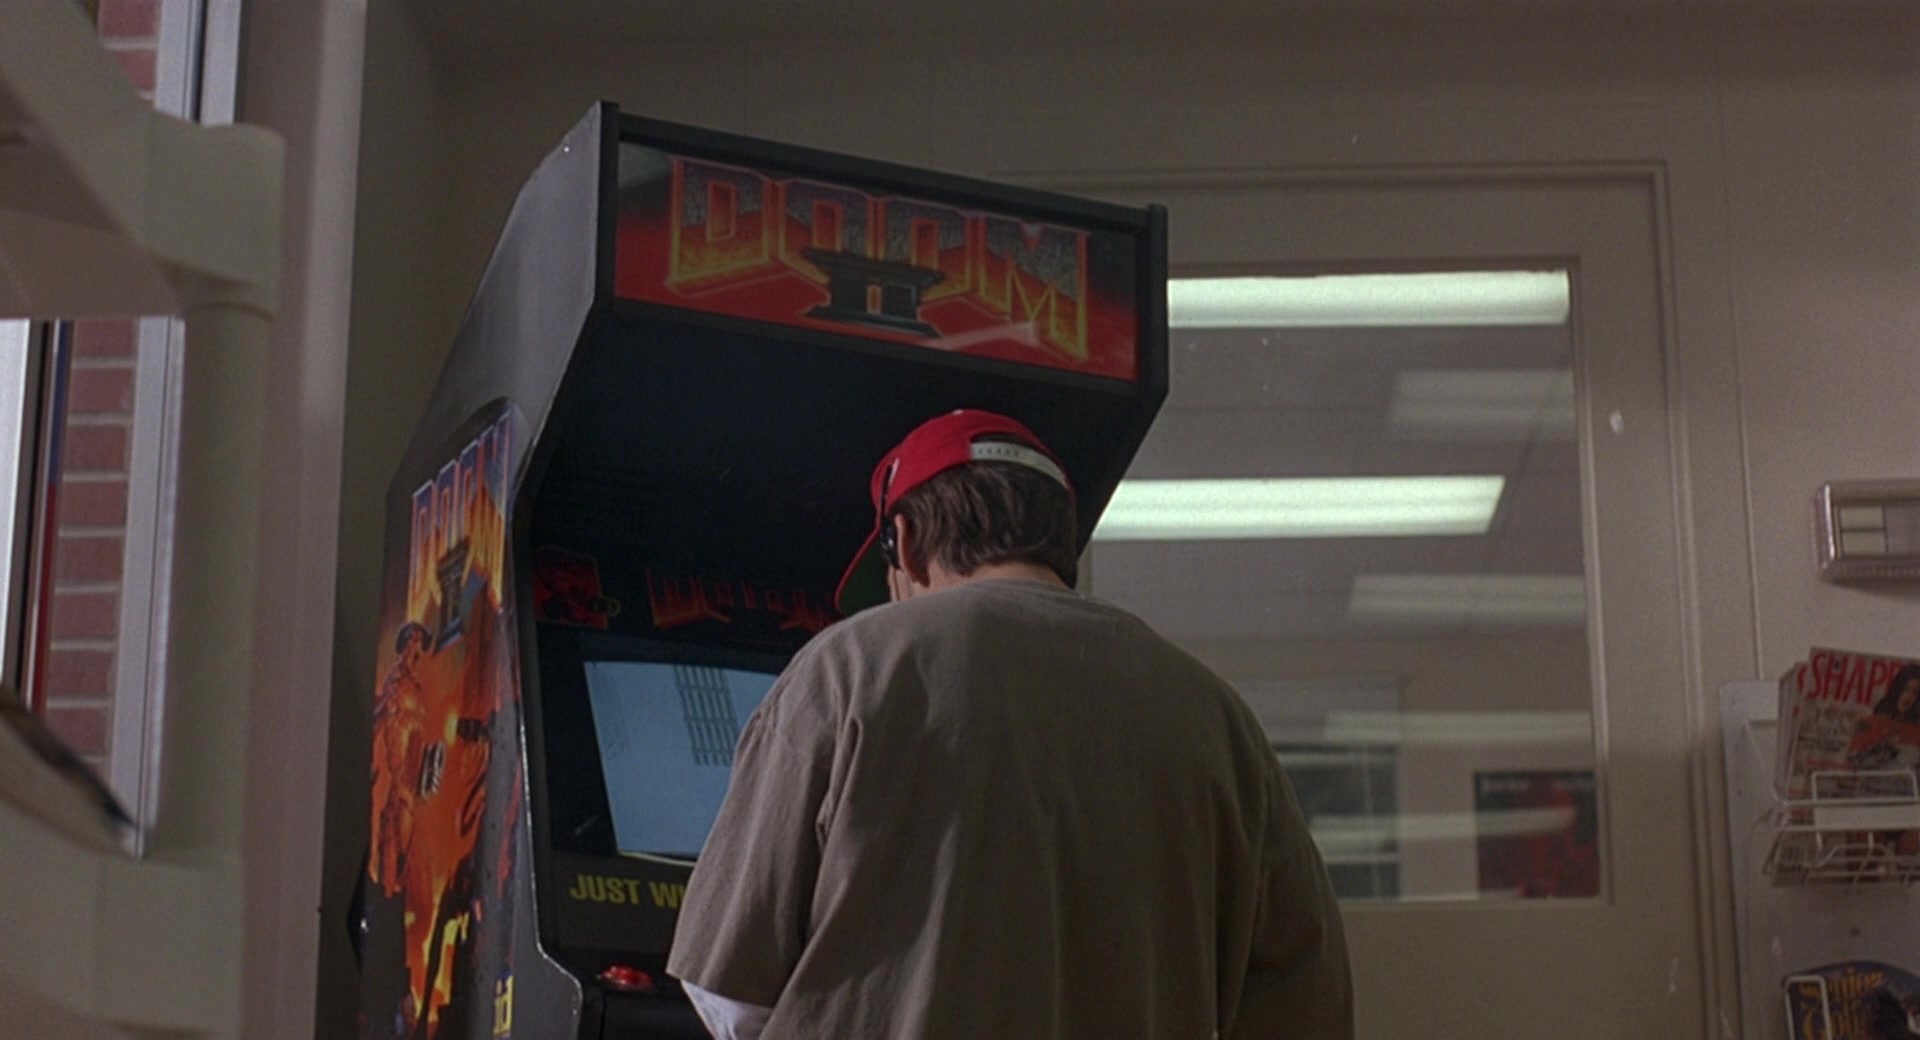 Doom-II-Video-Game-Arcade-Machine-in-Gro